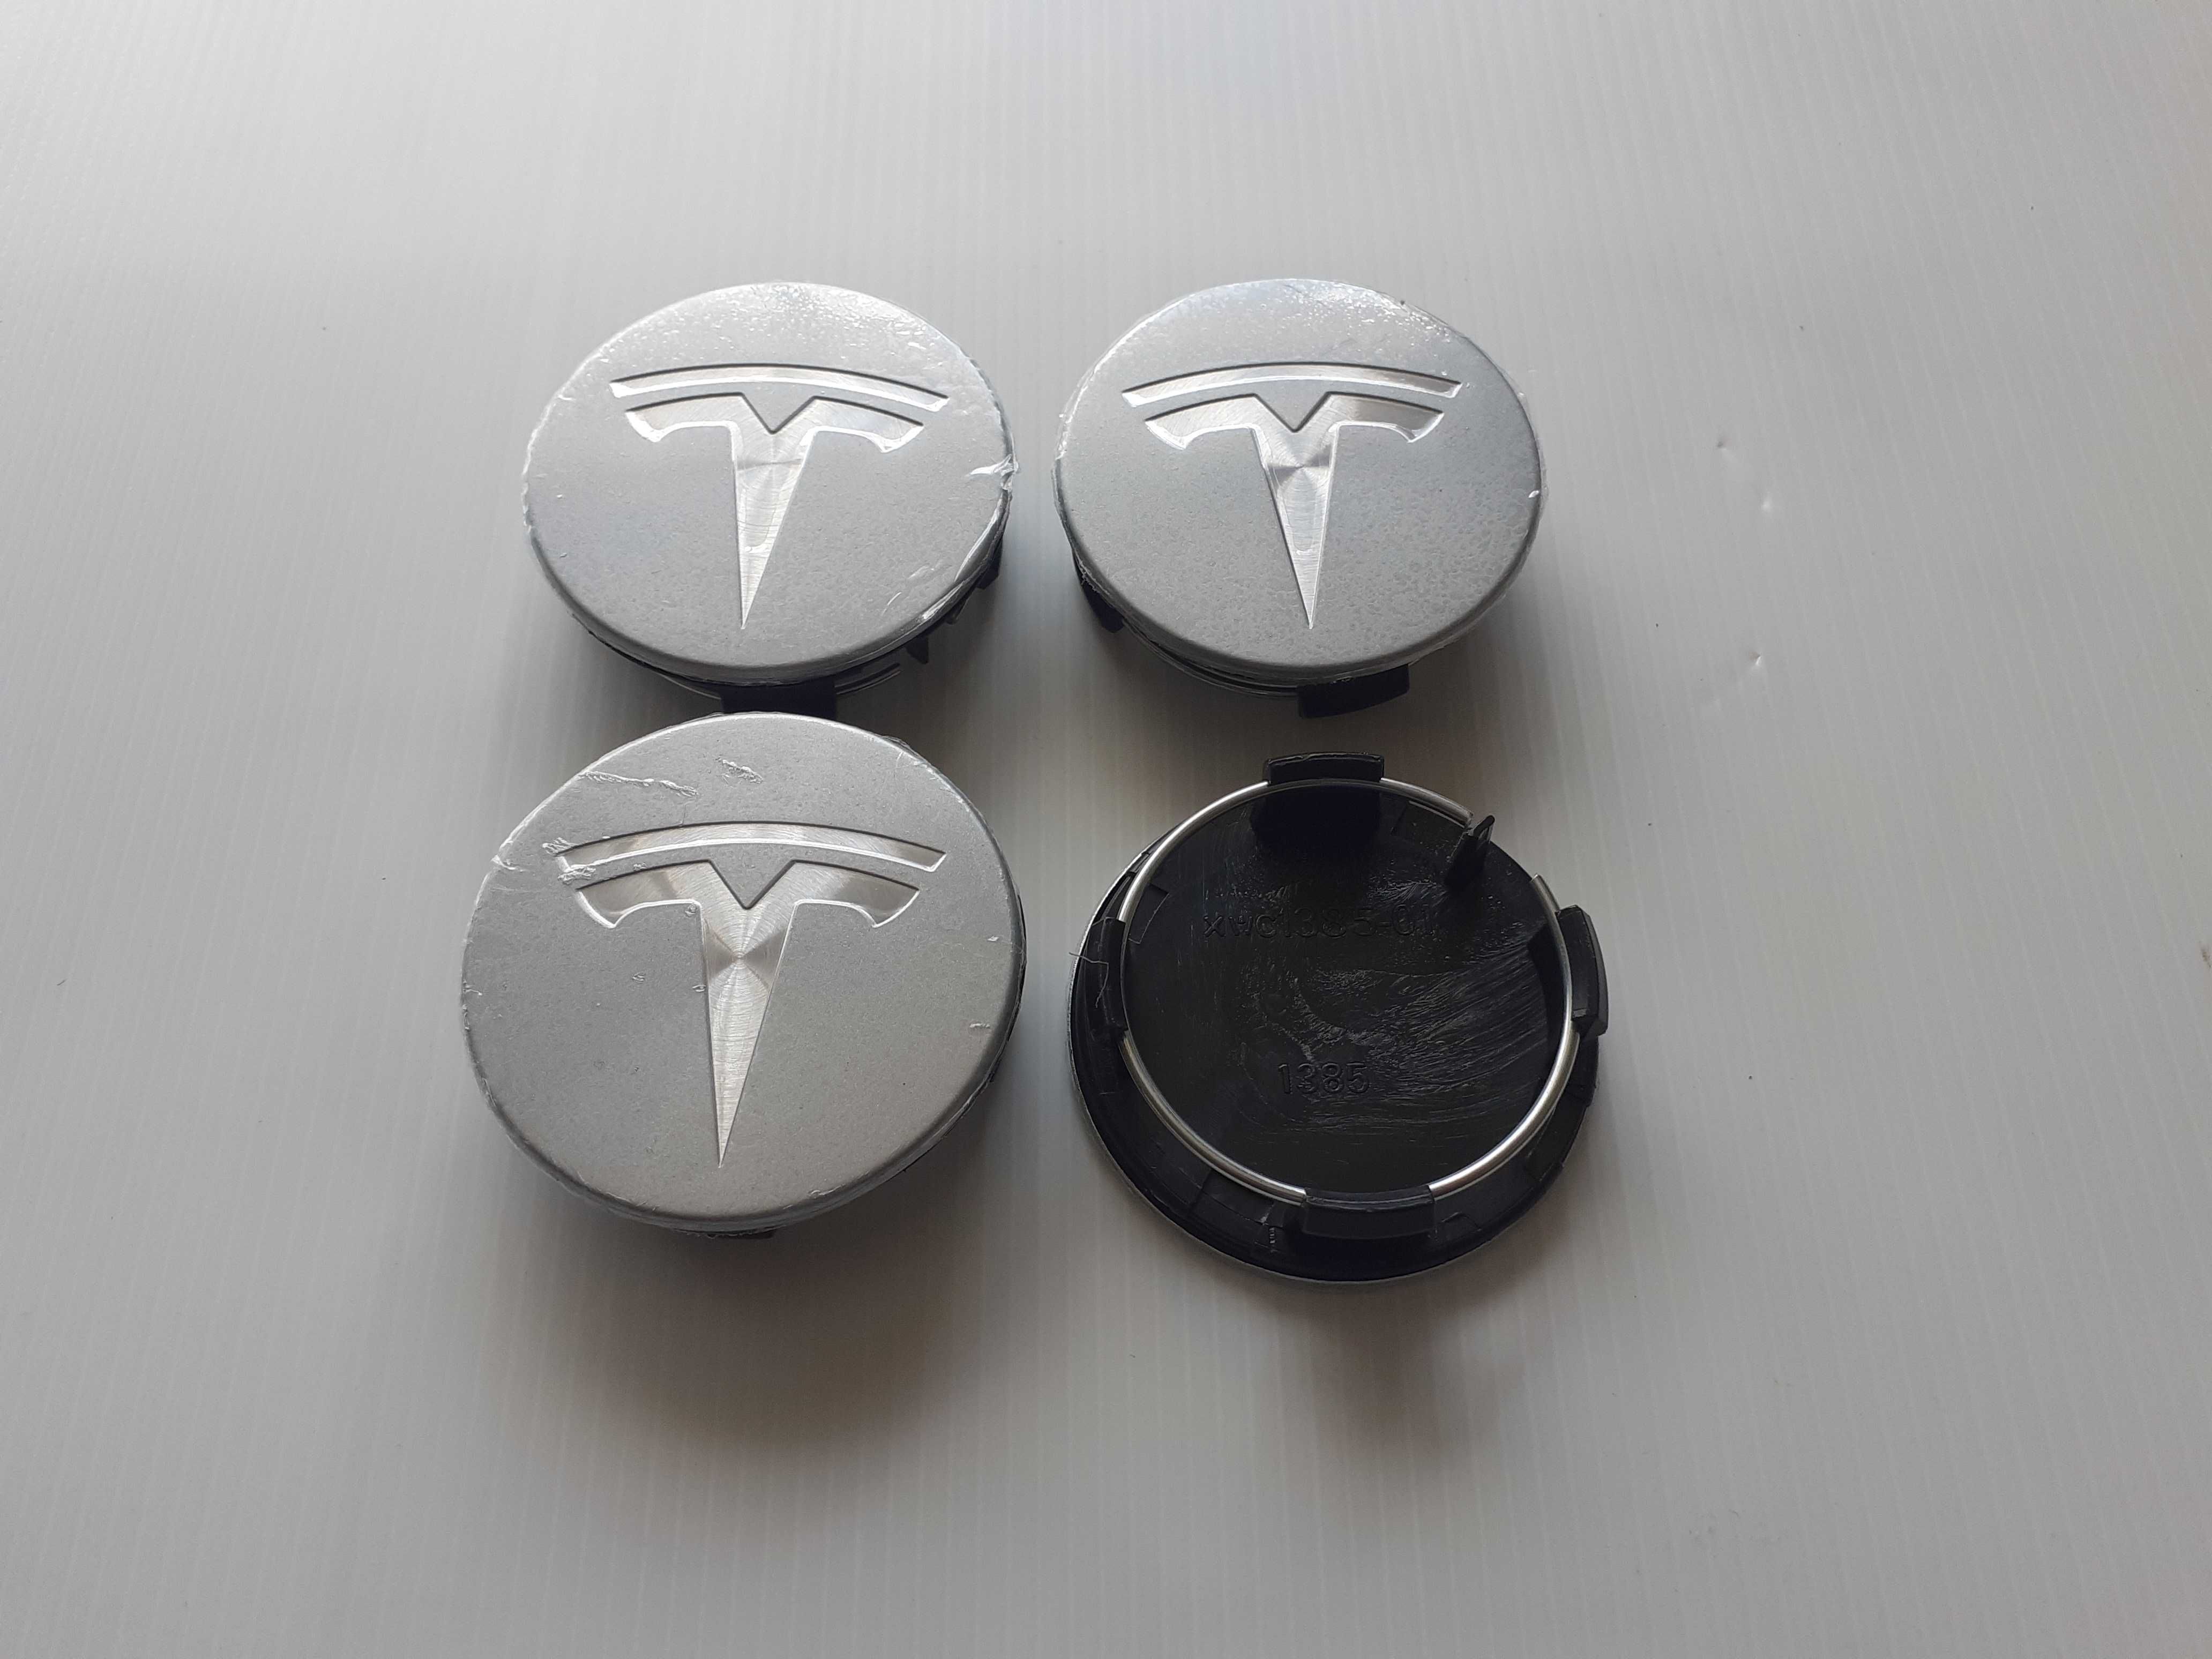 Centros/tampas de jante completos Tesla com 57 mm